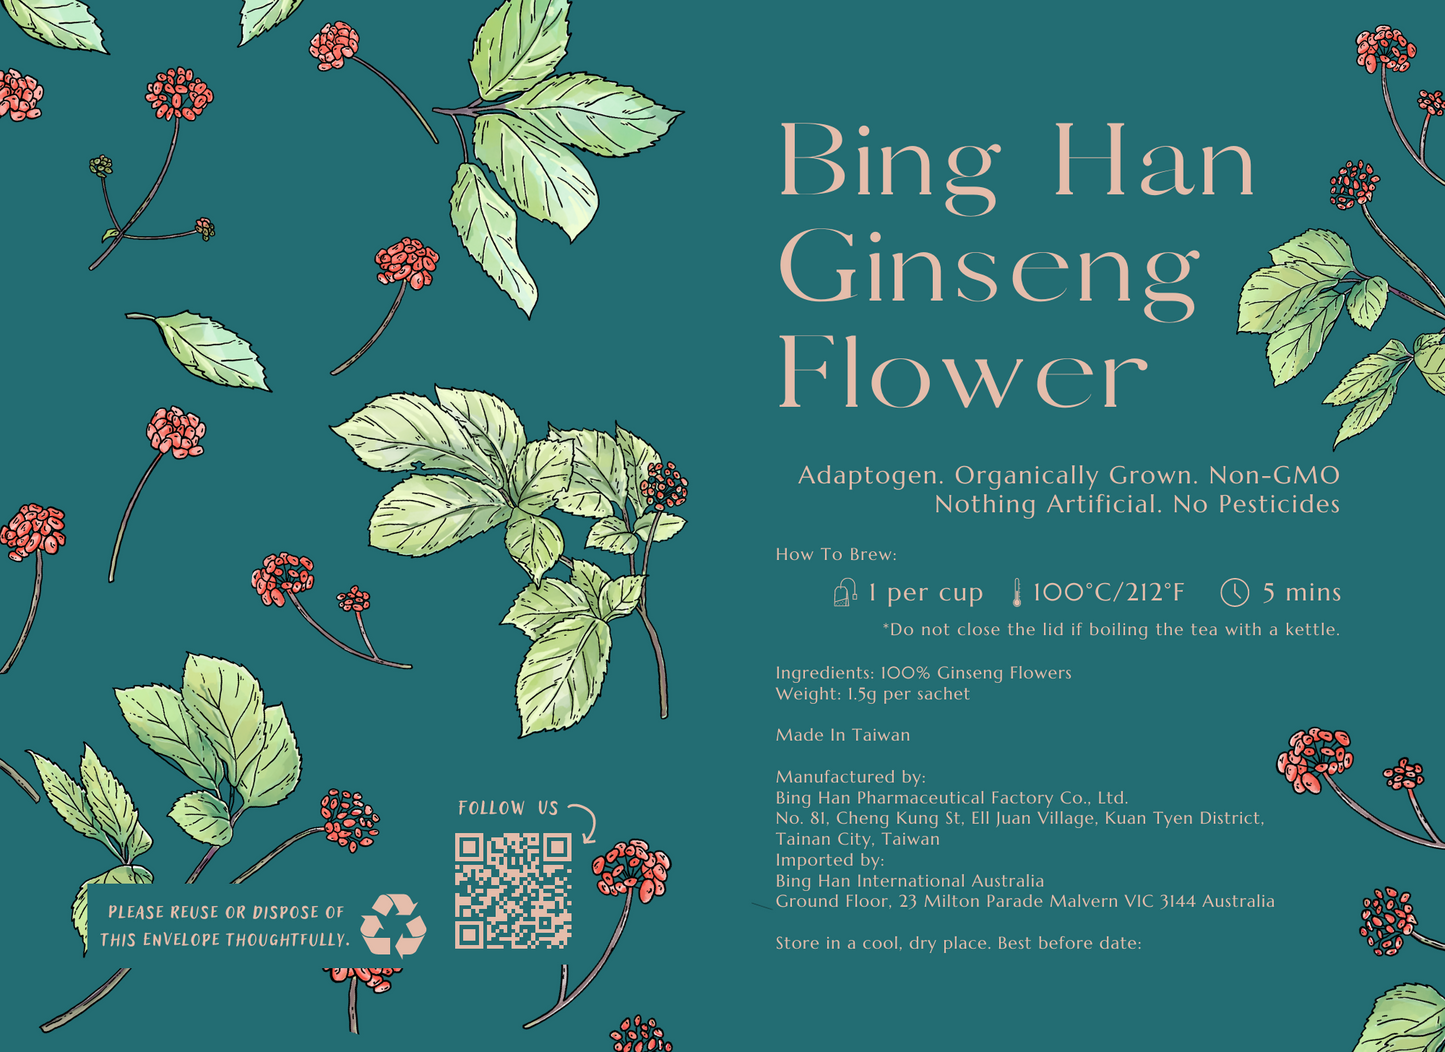 Bing Han Ginseng Flower